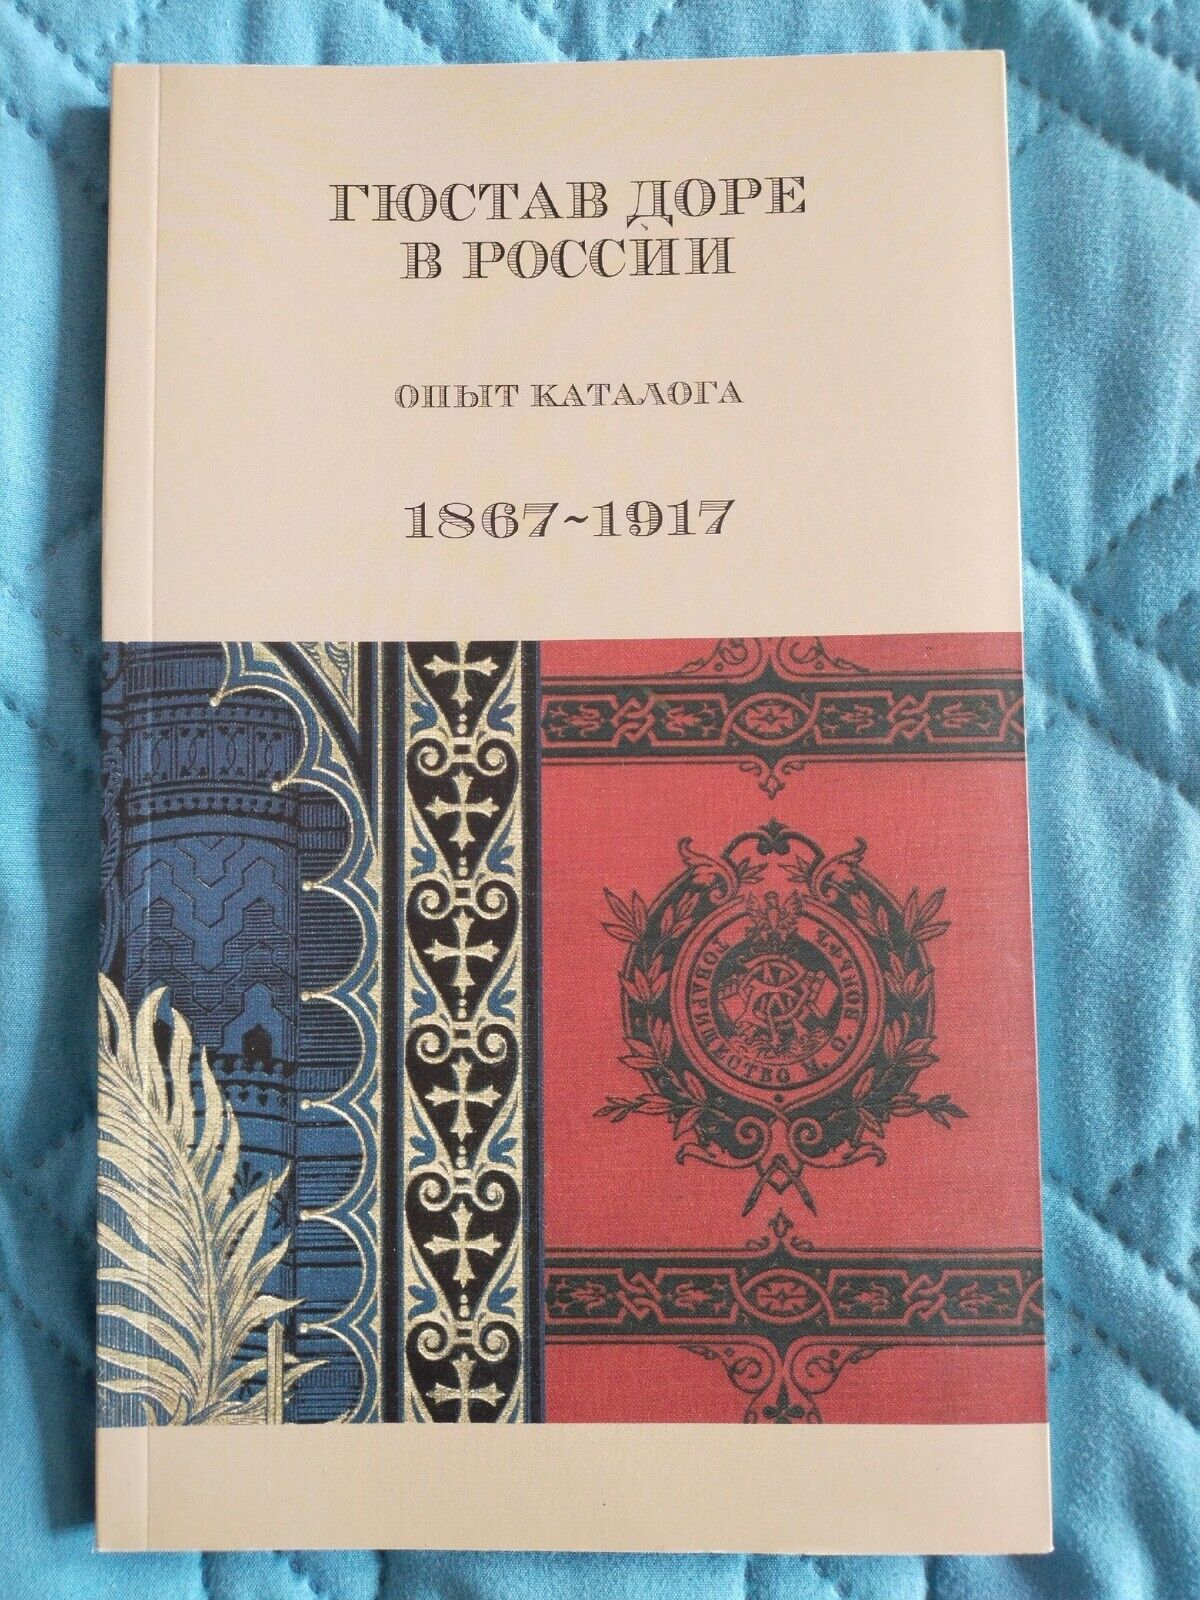 Gustave Dore. Russian Illustrated Books 1867-1917. John Milton Dante Alighieri